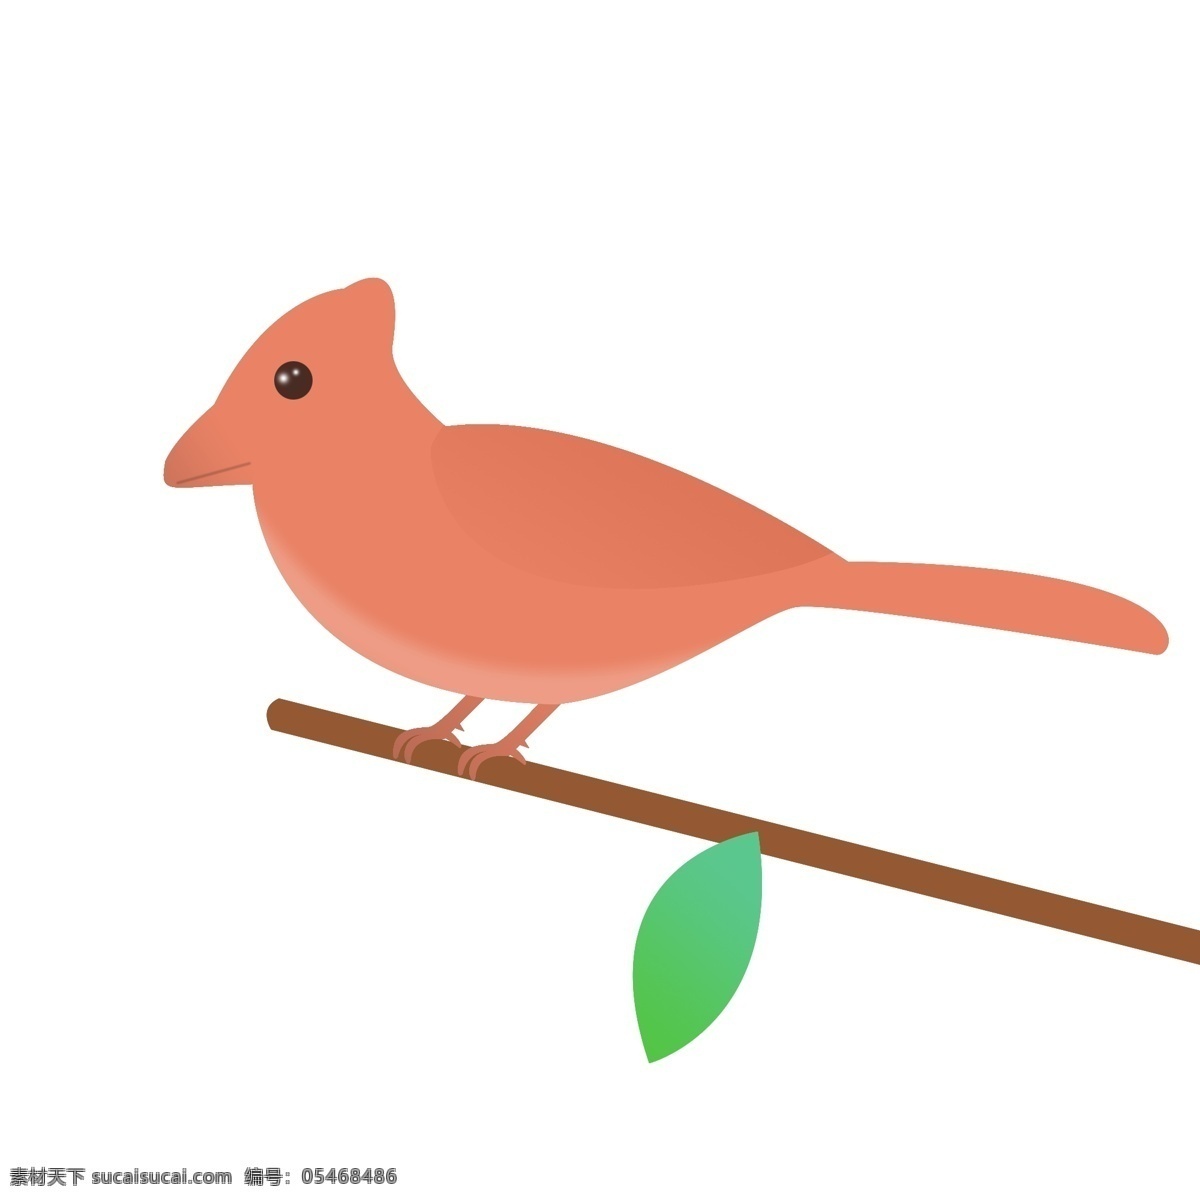 创意 卡通 小鸟 动物 元素 鸟类 简约